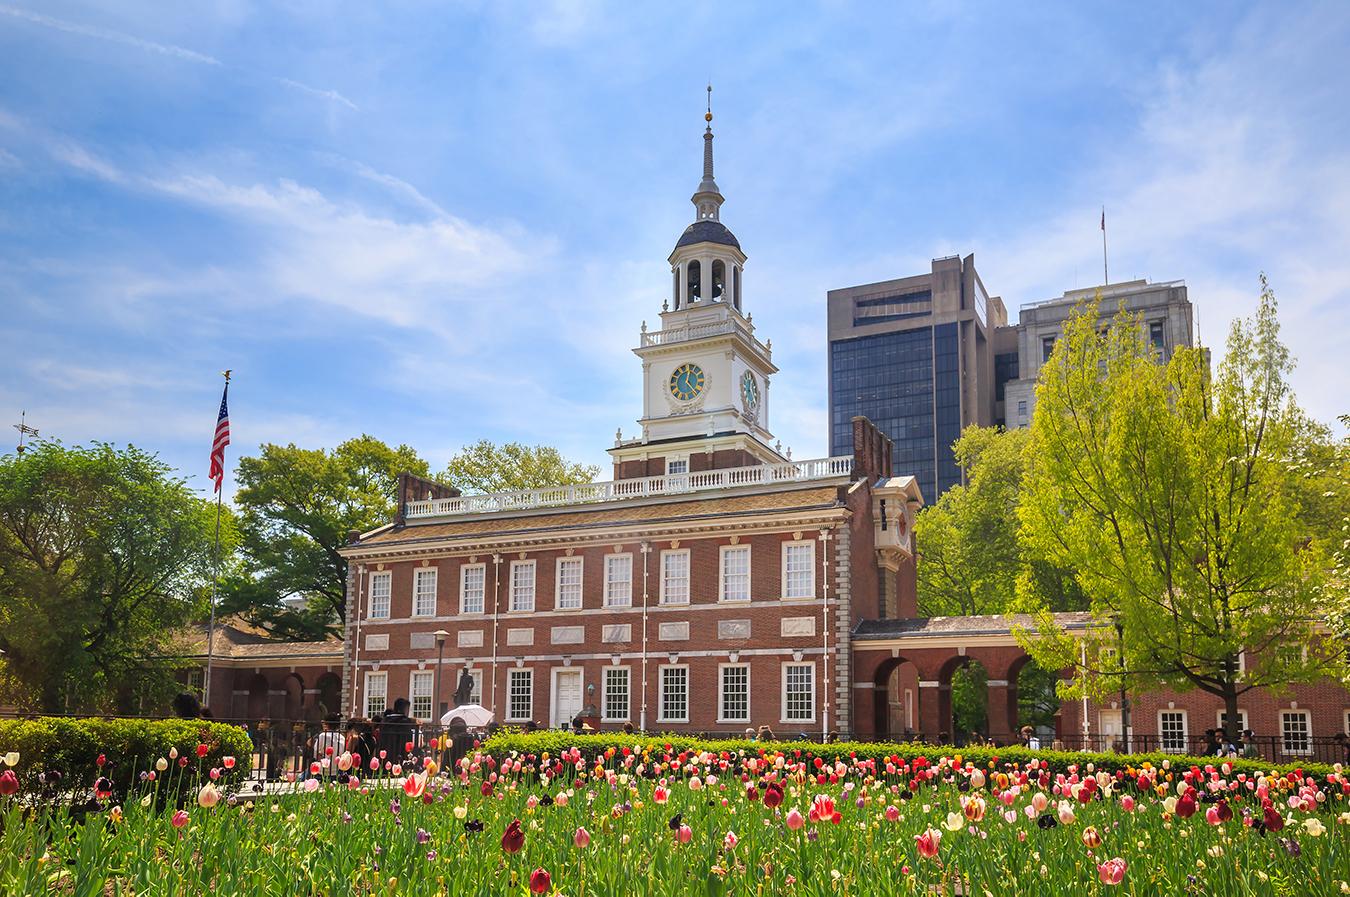 Colonial architecture in Philadelphia